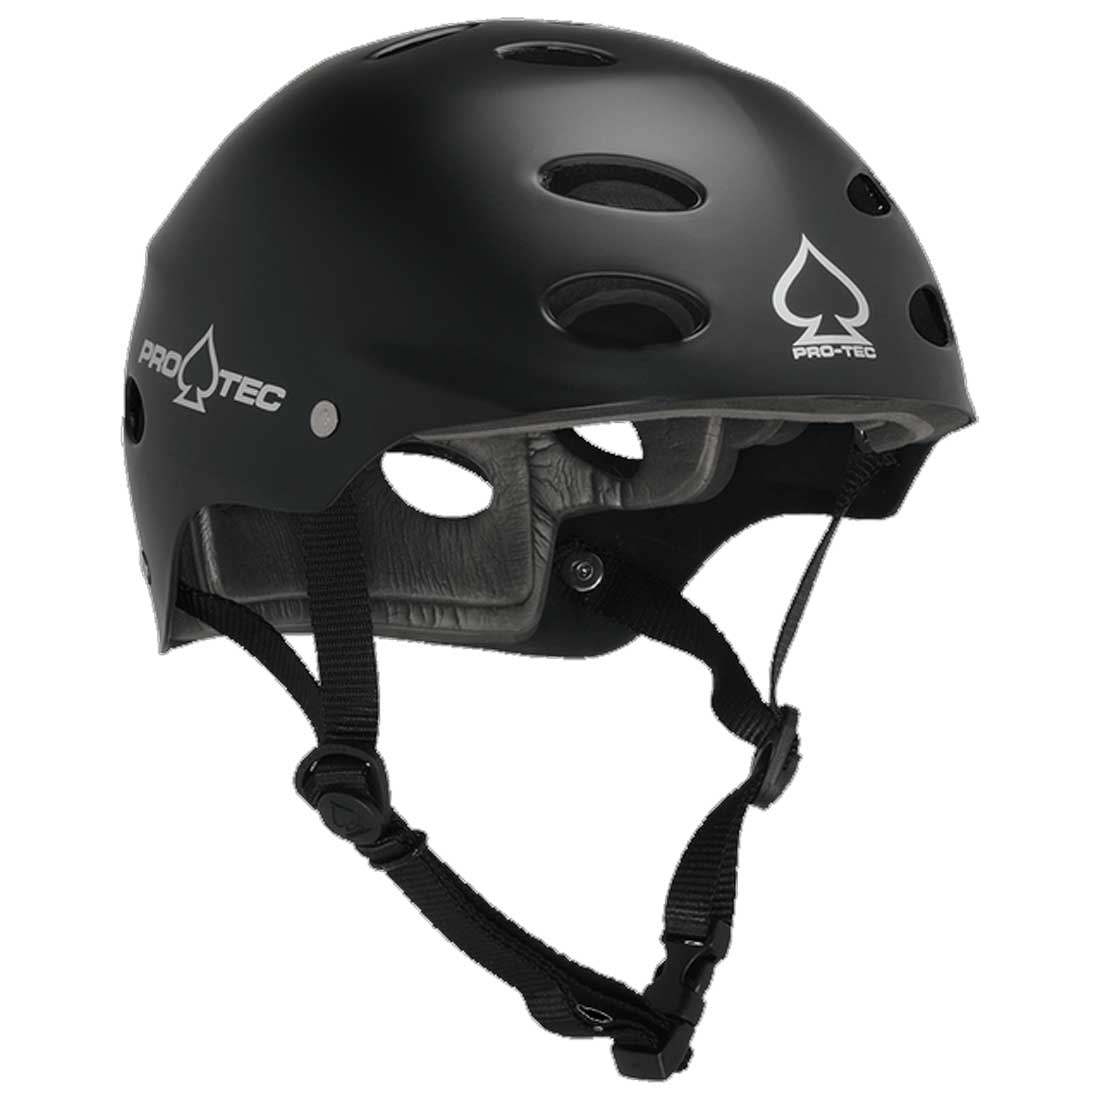 送料無料人気のウォータースポーツヘルメット PRO-TEC ACE WATER MatteBlack バースデー 記念日 ギフト 贈物 お勧め 通販 ウォータースポーツ ヘルメット 低価格 レディース ジュニア メンズ